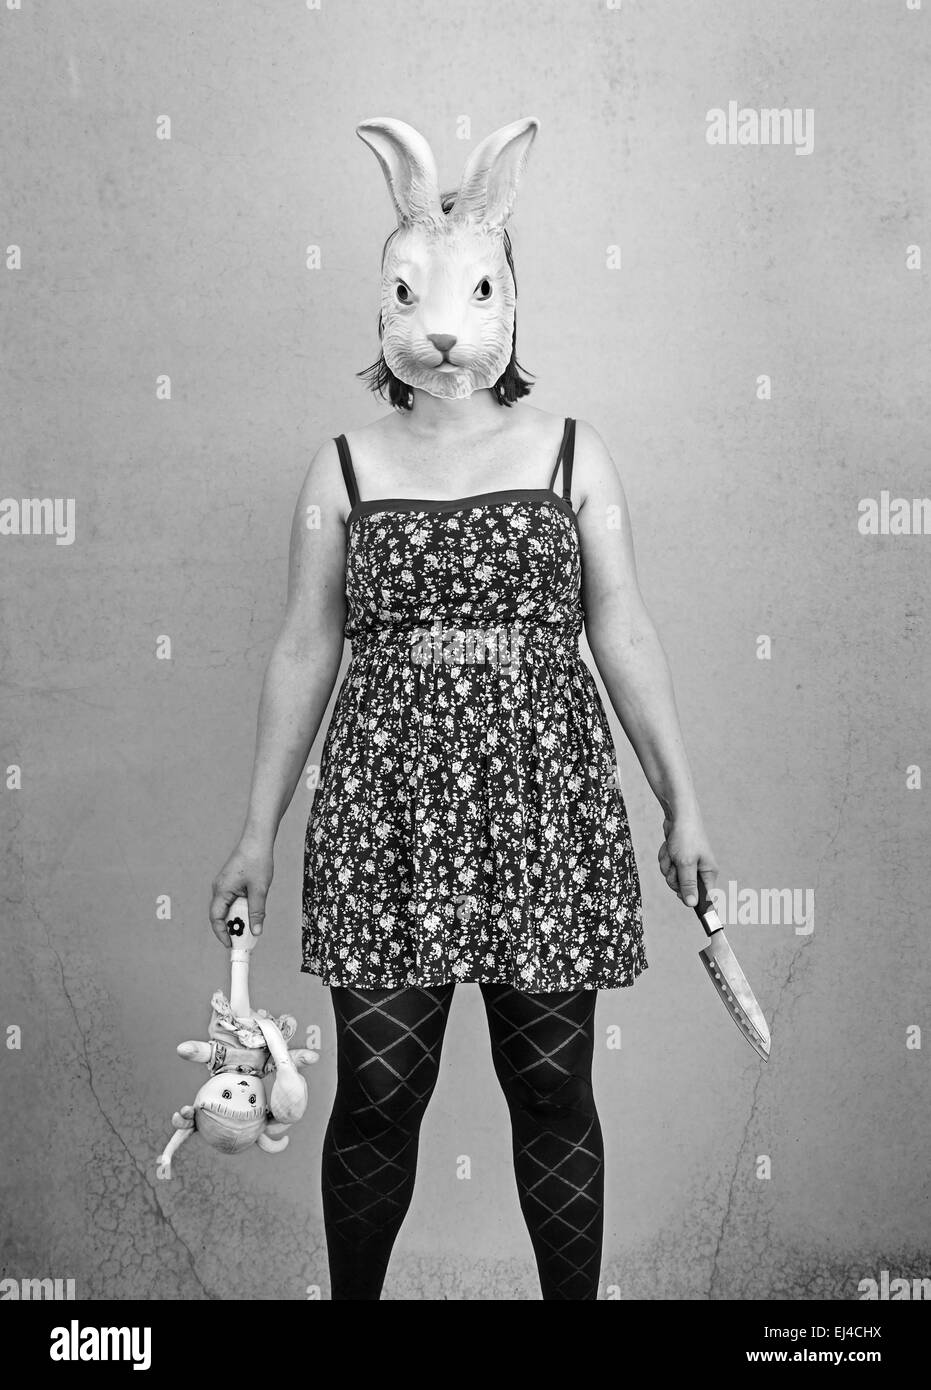 Chica en halloween máscara de conejo, el miedo y el terror Foto de stock